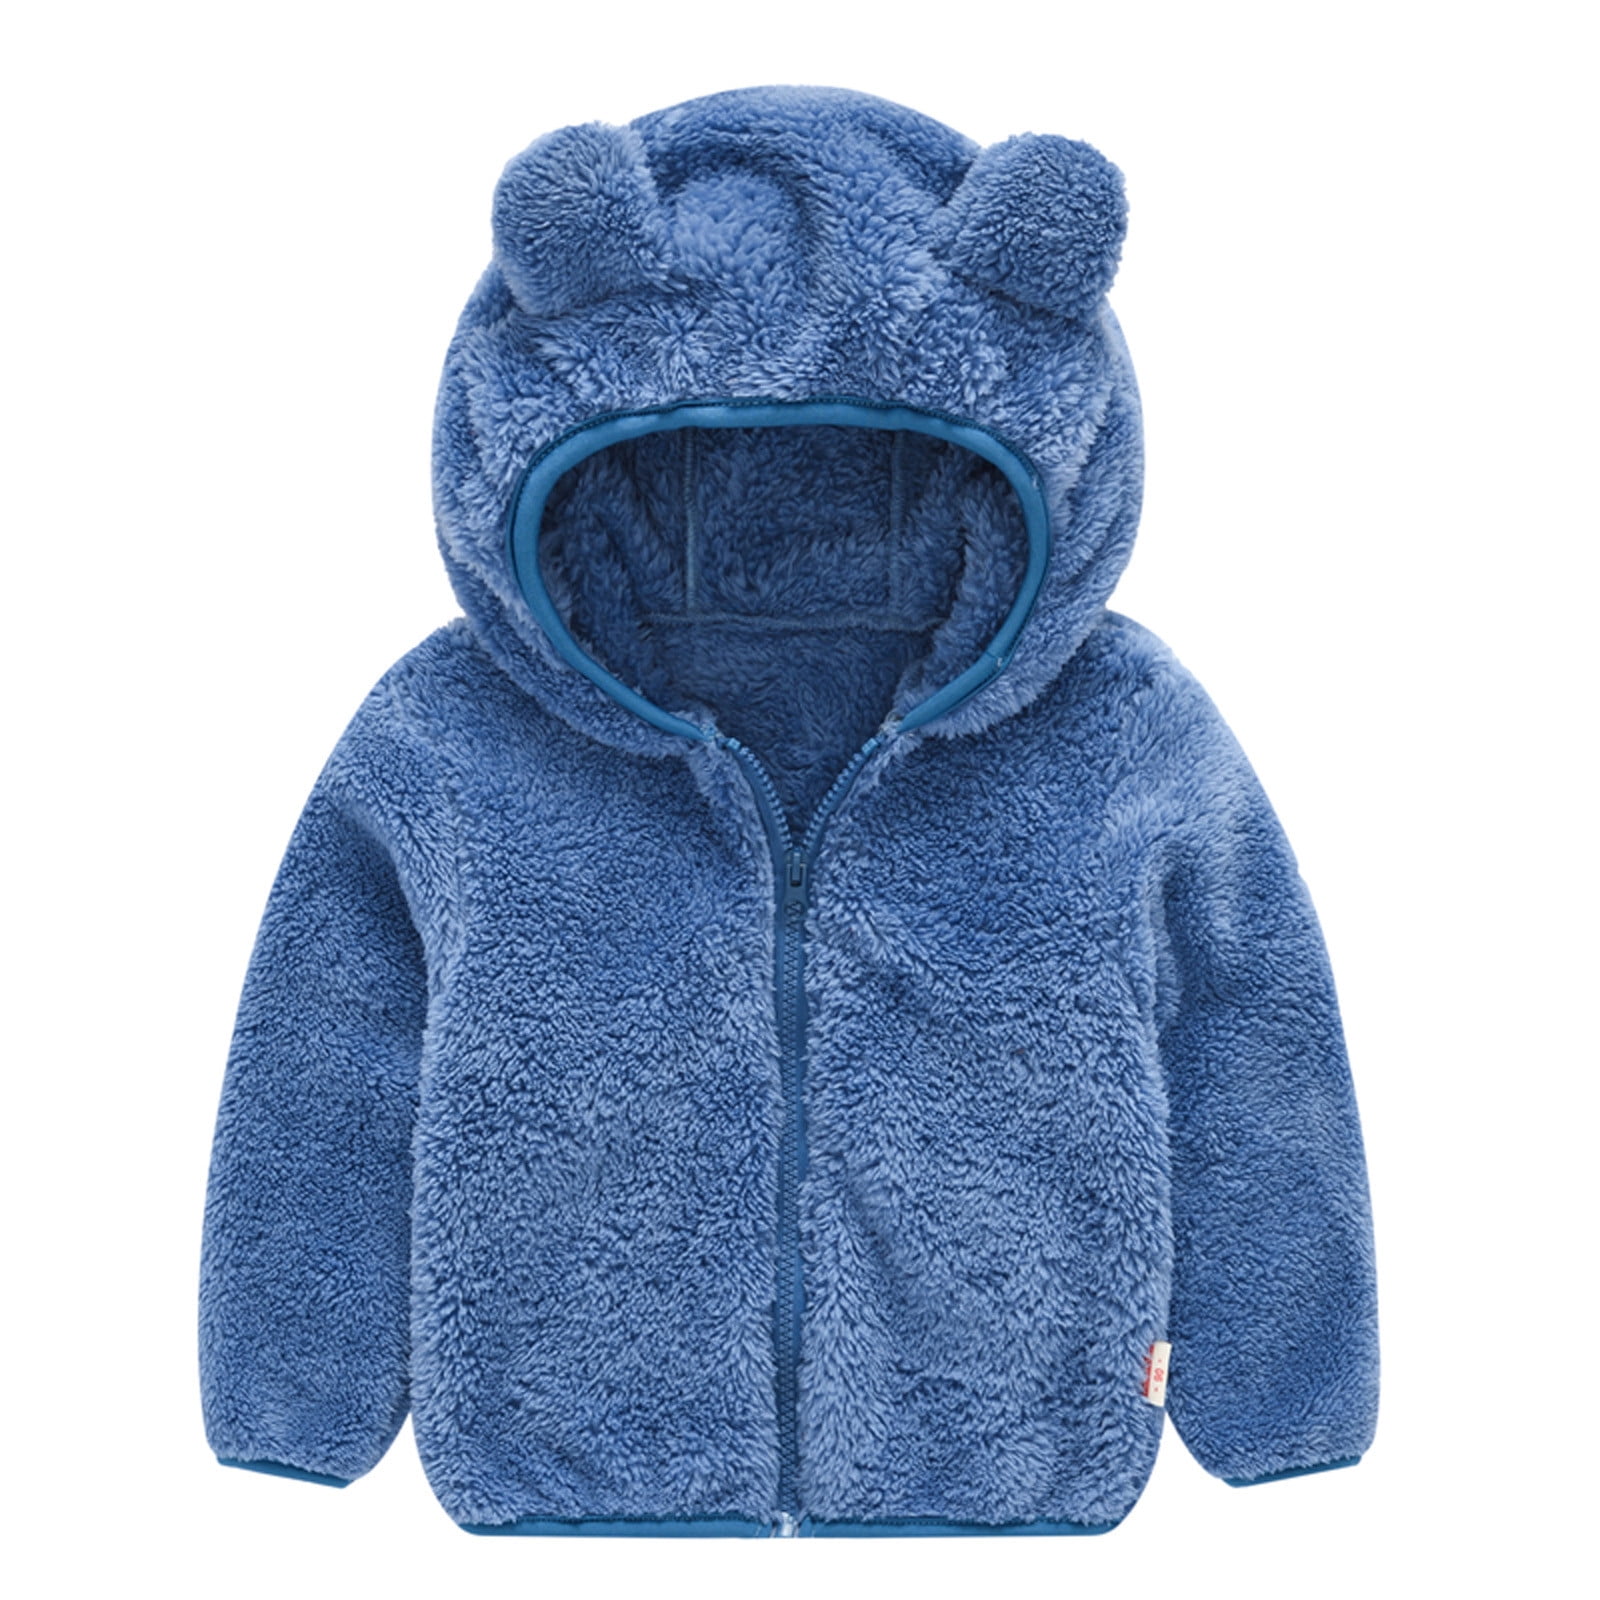 Toddler Baby Kids Girl Ear Hooded Coat Top Winter Warm Long Sleeve Jacket Hoodie 